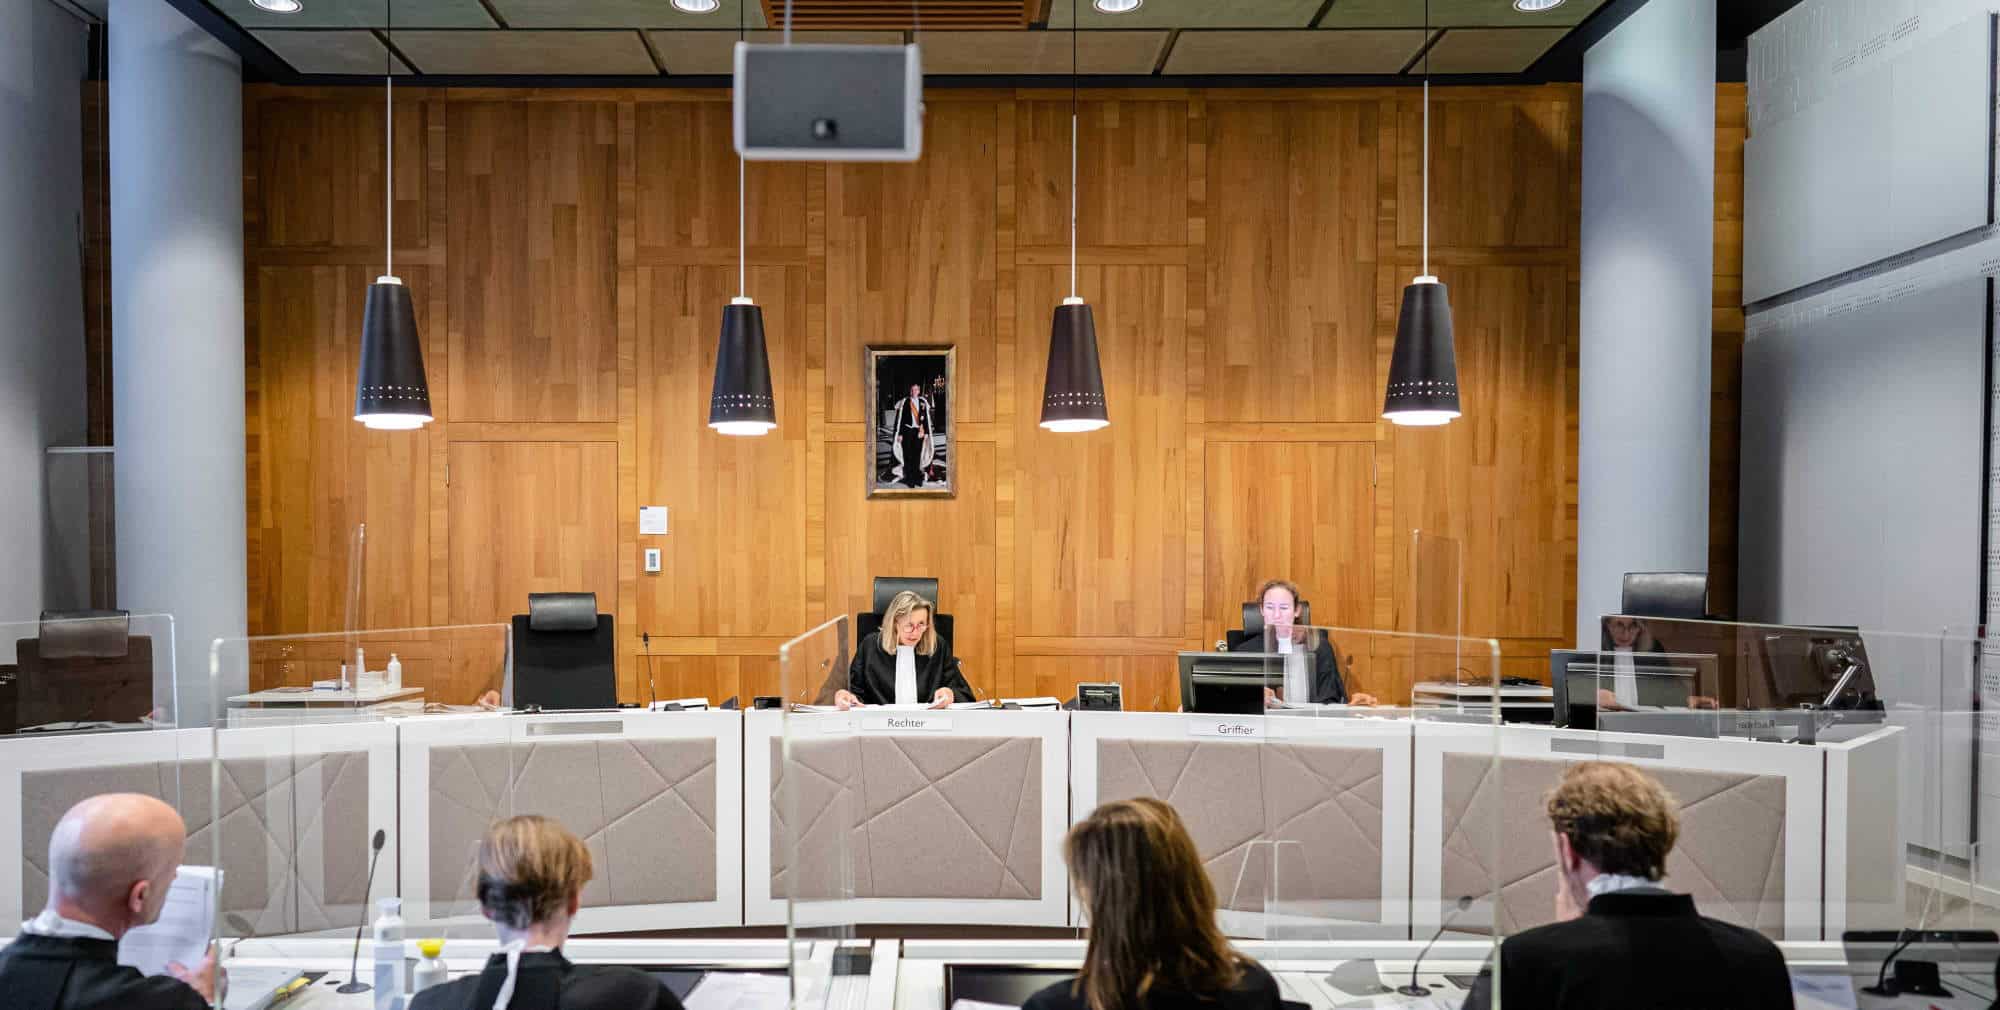 Βοήθεια στο Διεθνές Δικαστήριο, αίθουσα του οποίου φαίνεται στην εικόνα, στέλνει η Γαλλία